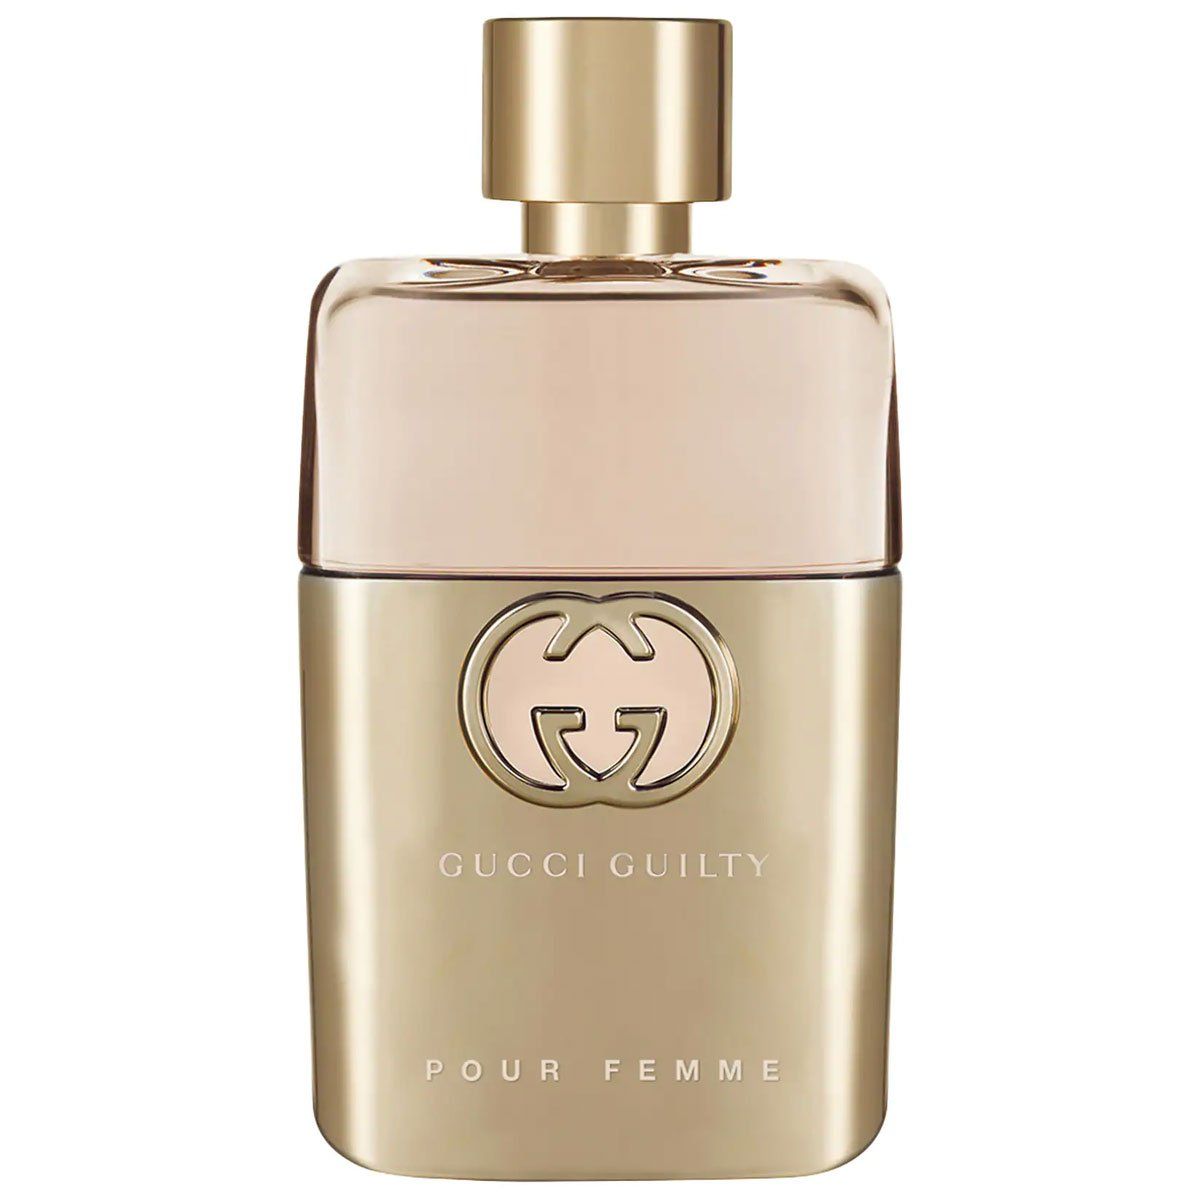 Nước hoa Gucci Guilty Pour Femme (90ml / Eau de Parfum) chính hãng Gucci  cao cấp dành cho nữ - FIT - FIT - Đặc quyền ưu đãi